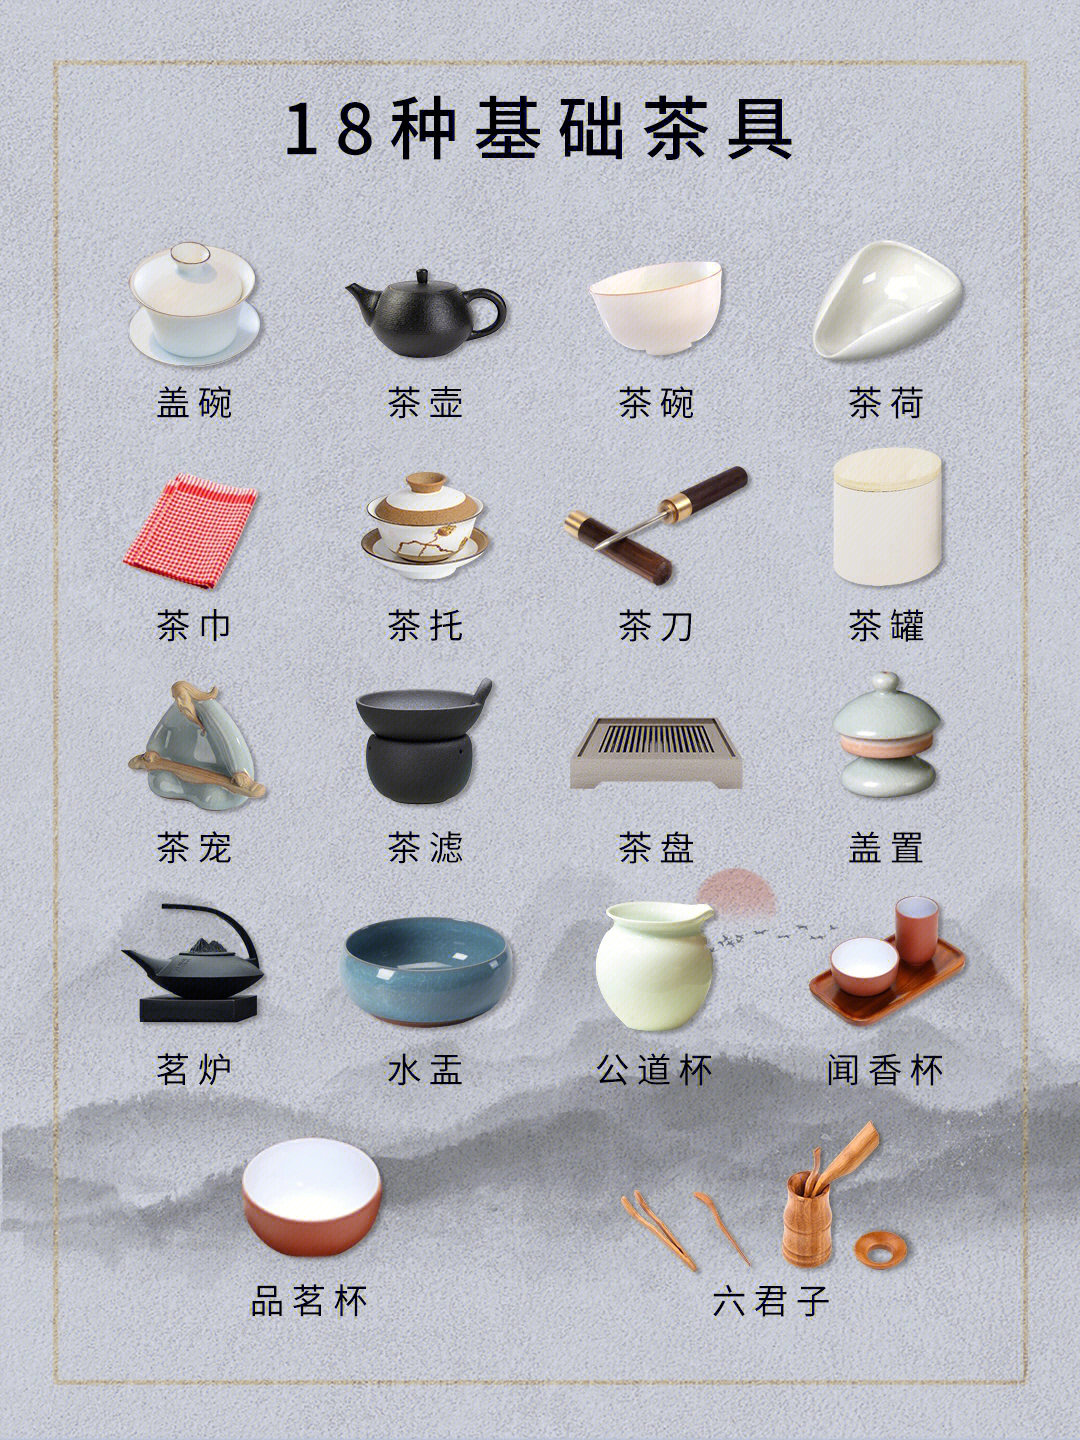 茶具有哪些分别叫什么图片